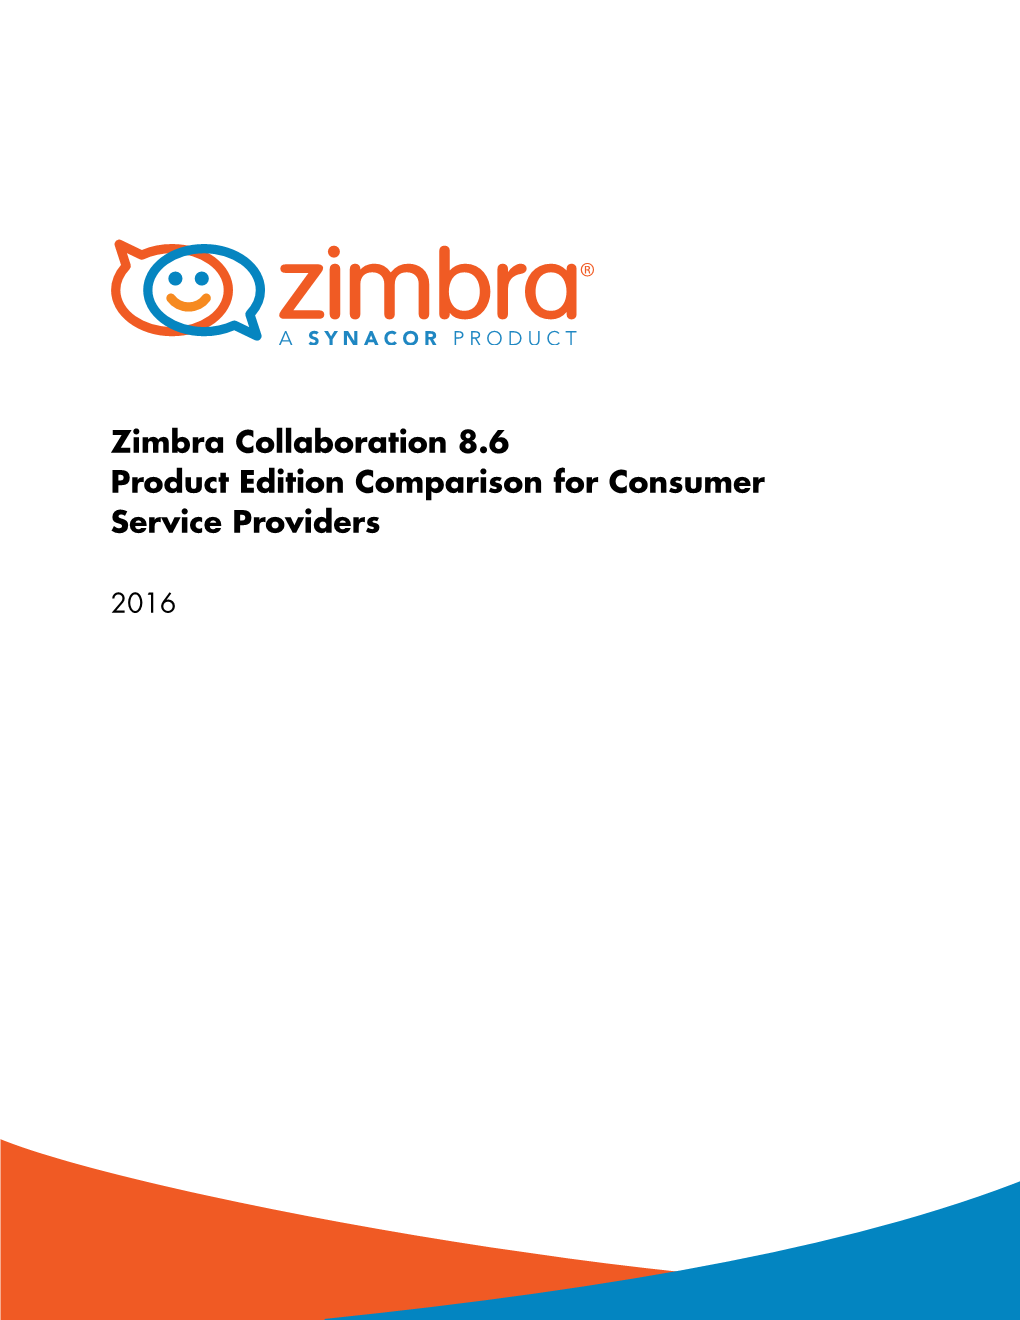 Zimbra Collaboration 8.6 Product Edition Comparison for Consumer Service Providers